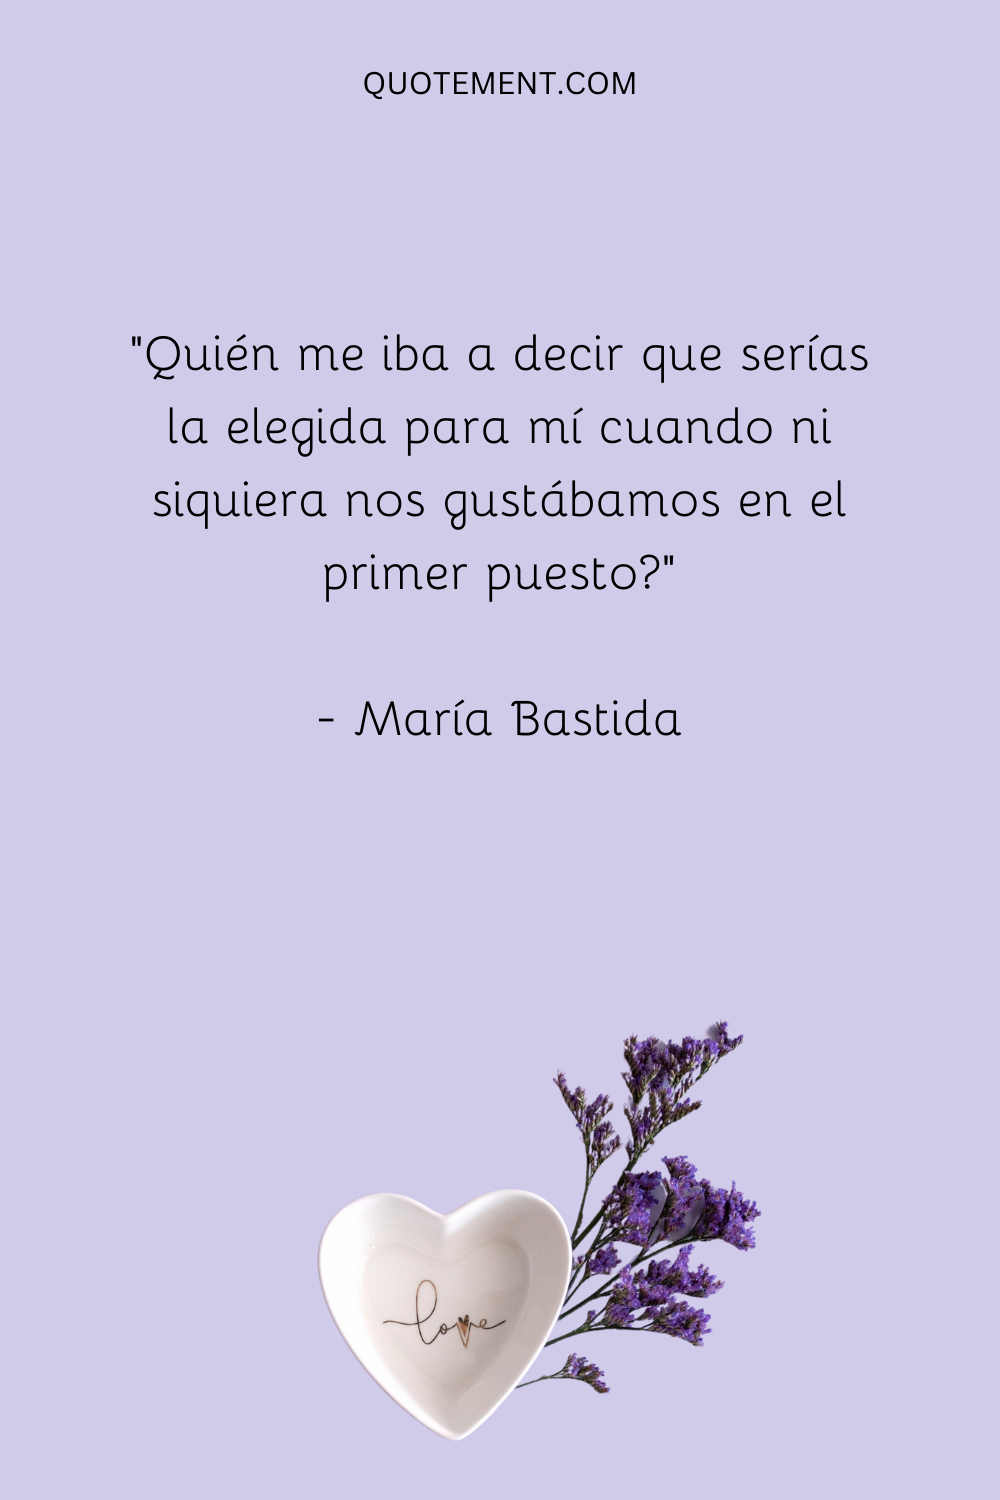 "Quién me iba a decir a mí que tú serías el indicado para mí cuando, para empezar, ni siquiera nos gustábamos" - María Bastida